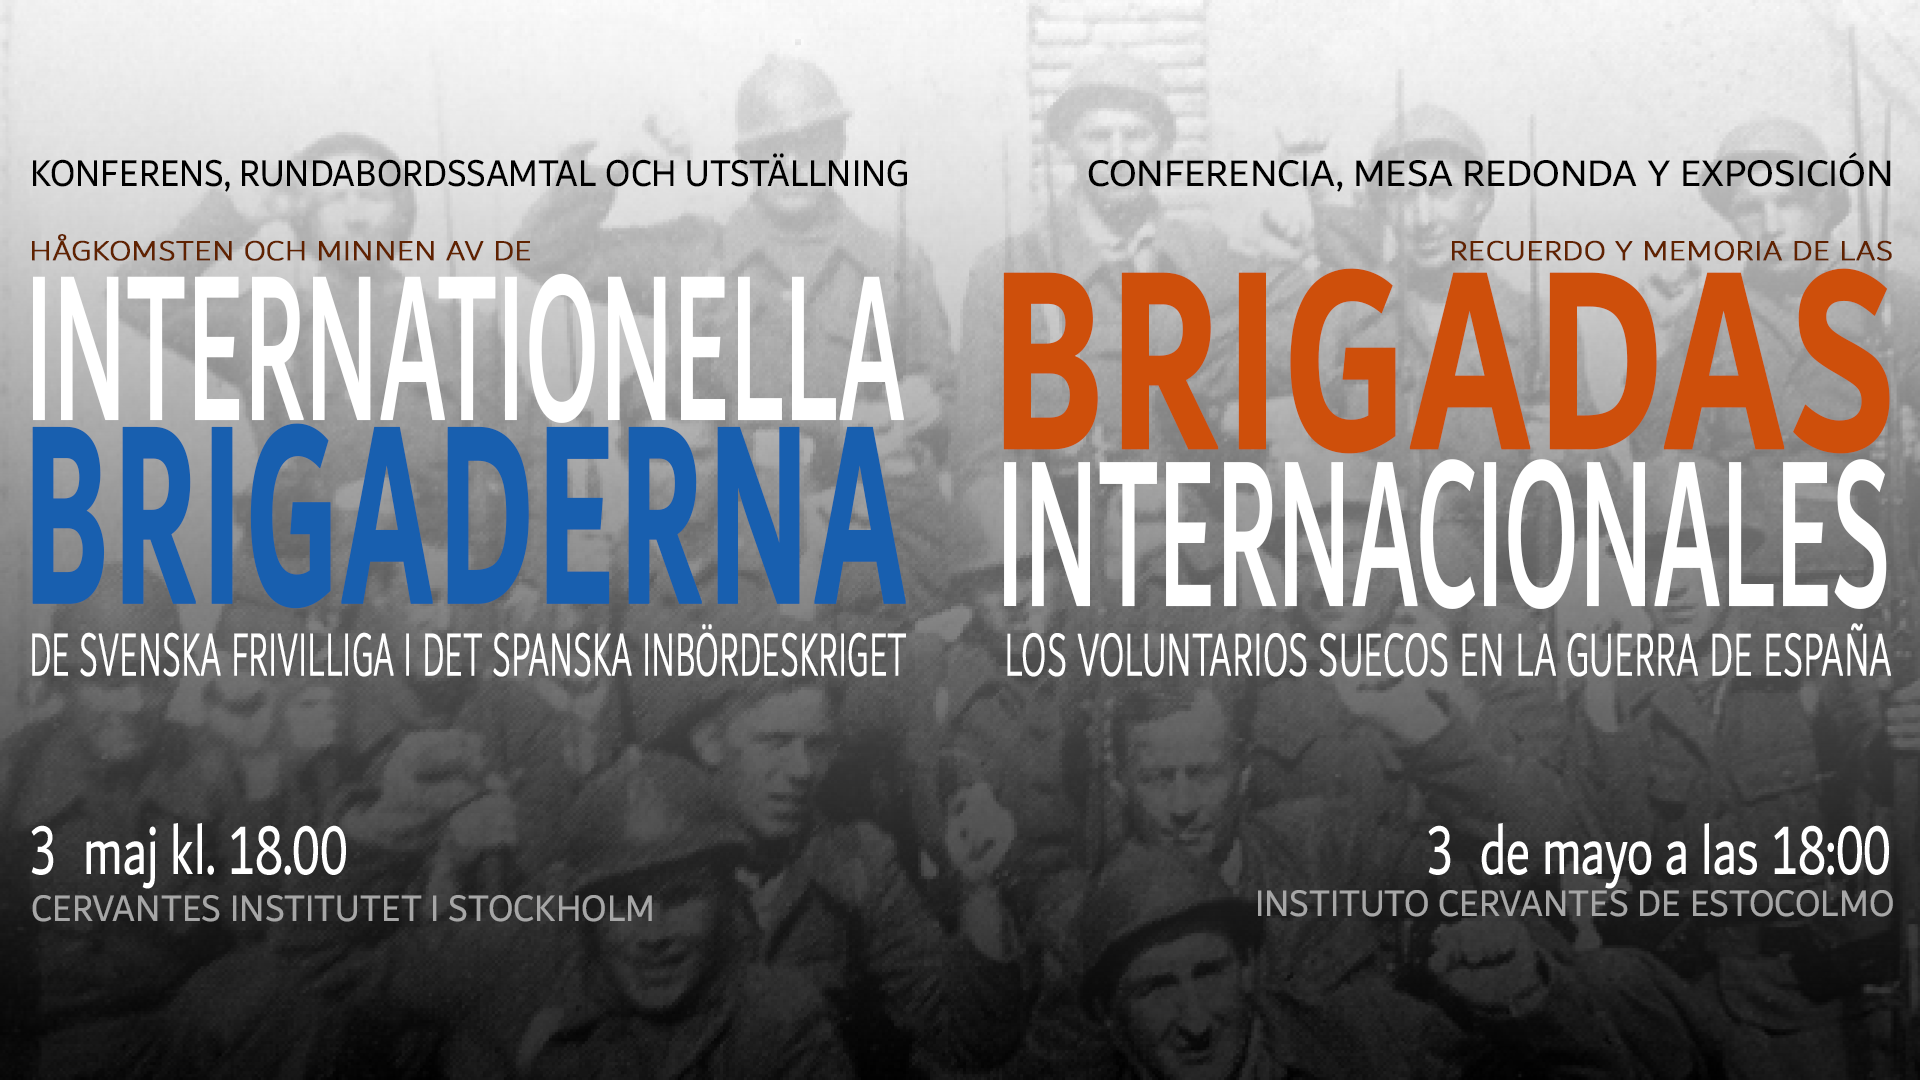 Las Brigadas Internacionales. Los voluntarios suecos en la Guerra de España